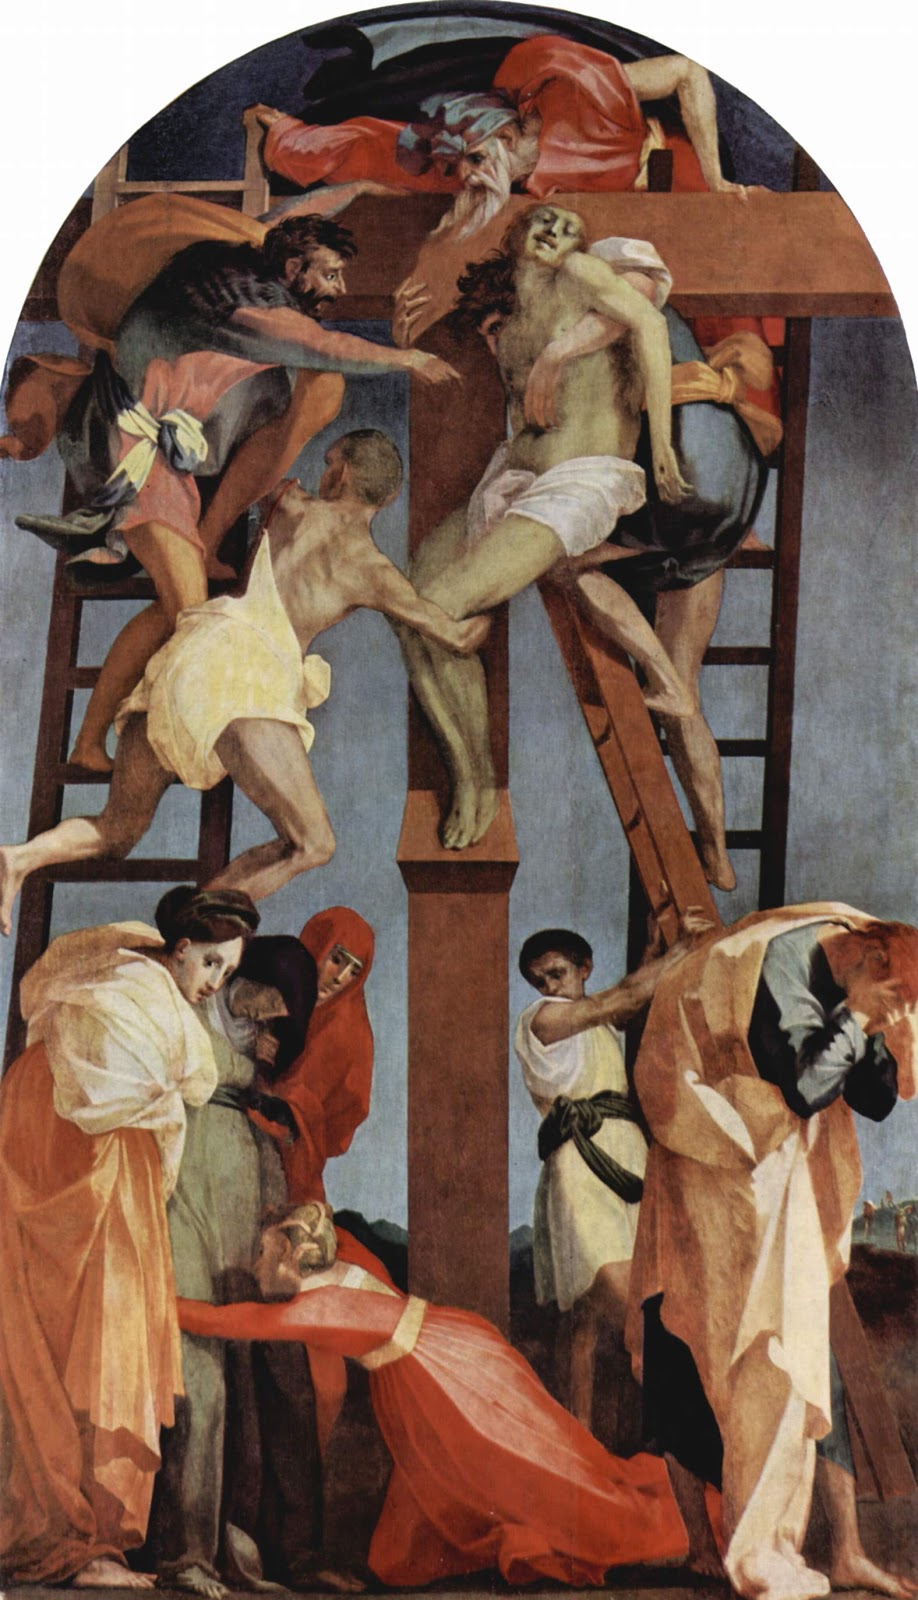 Rosso+Fiorentino-1495-1540 (22).jpg